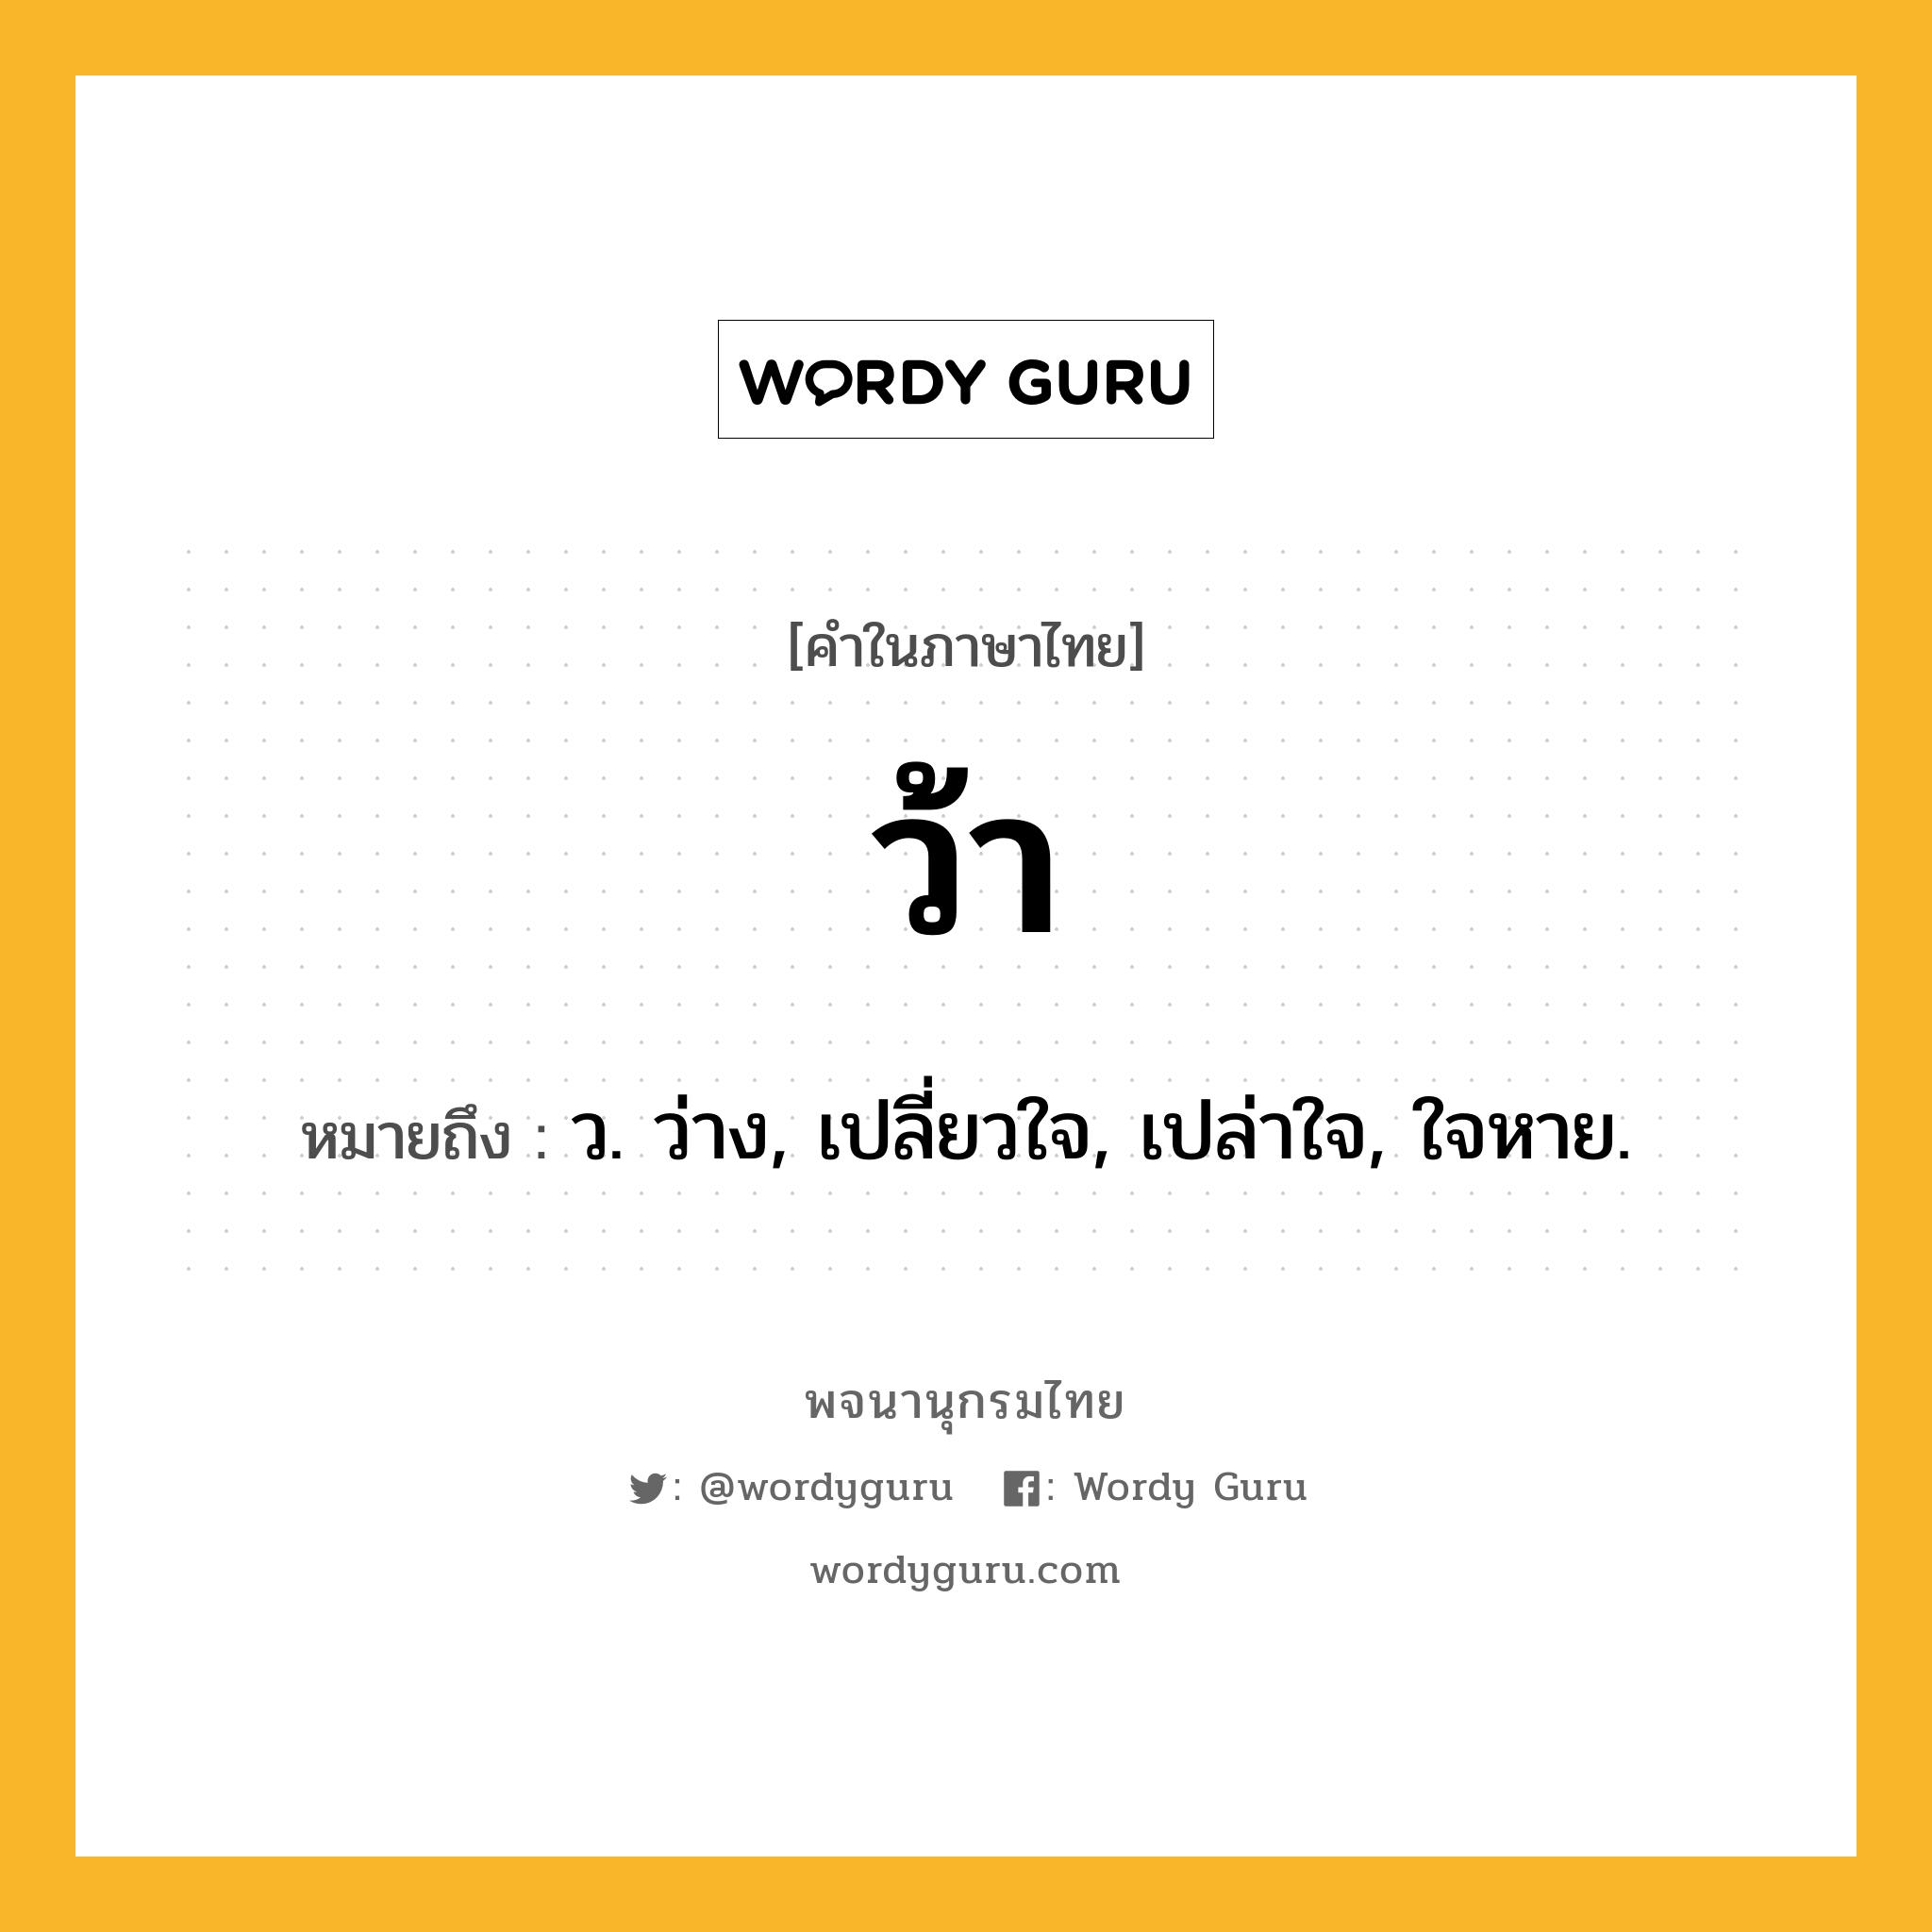 ว้า หมายถึงอะไร?, คำในภาษาไทย ว้า หมายถึง ว. ว่าง, เปลี่ยวใจ, เปล่าใจ, ใจหาย.